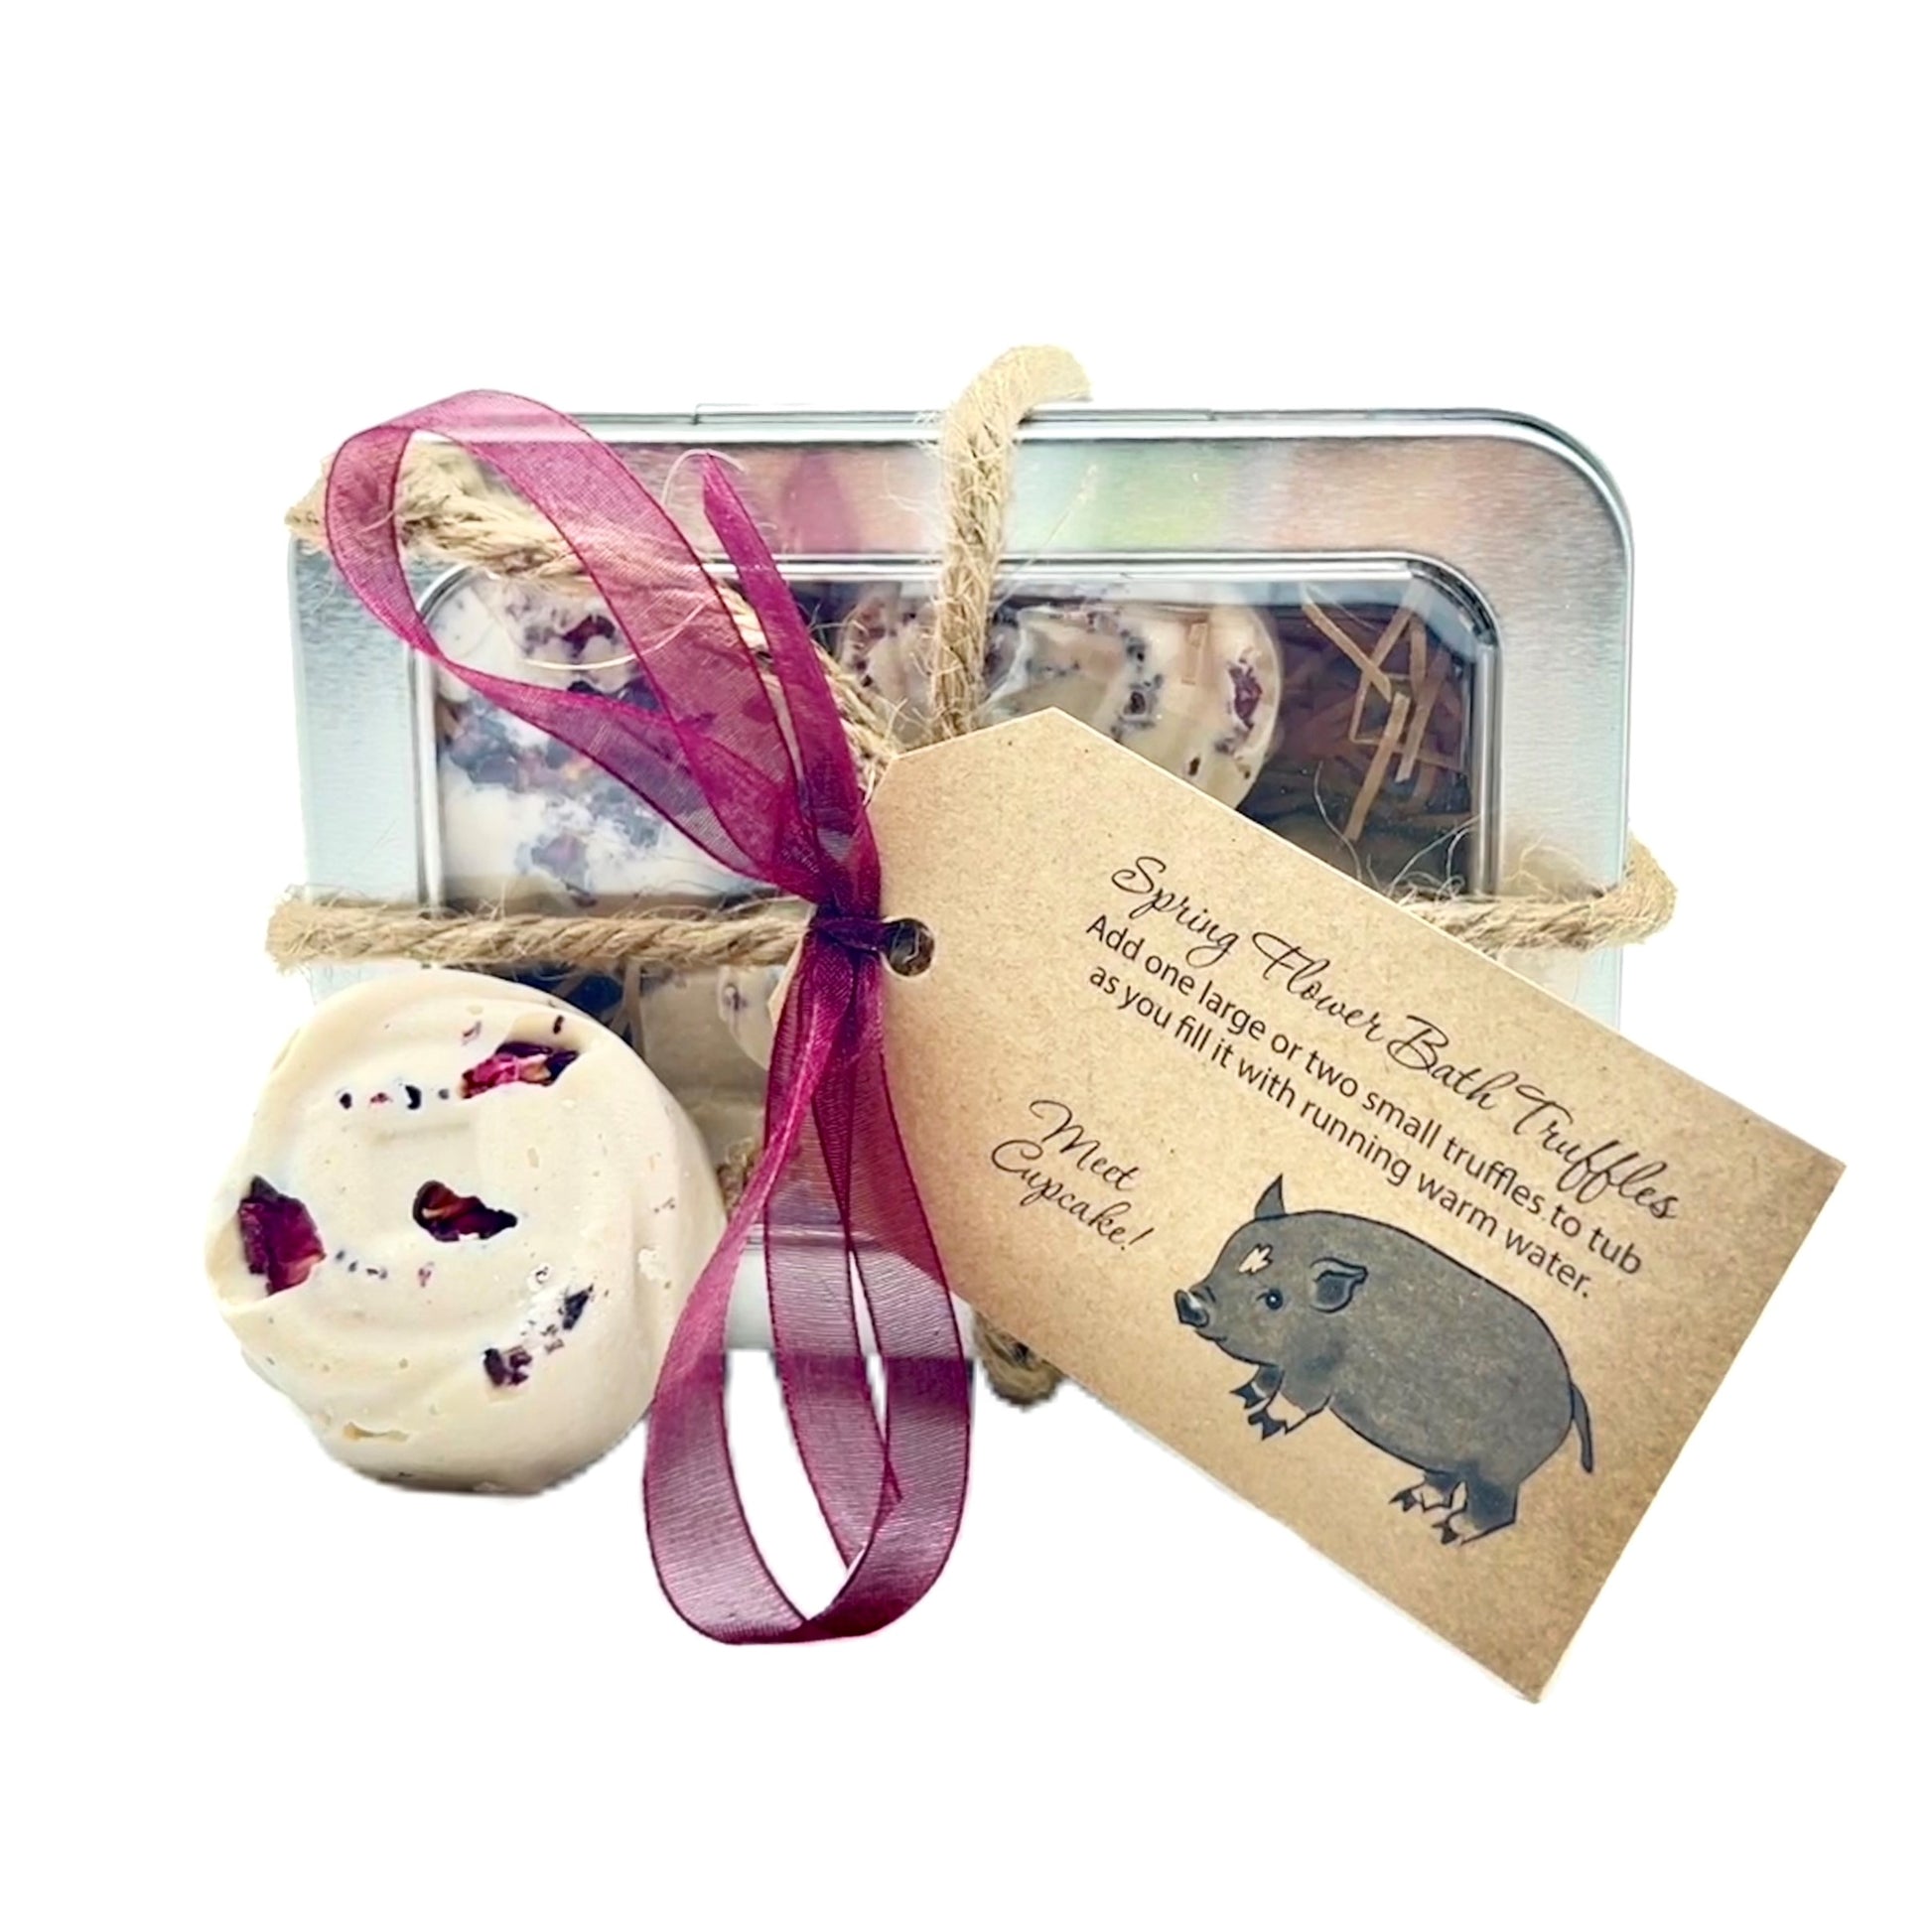 Sweet Tea Harvest Gift Basket – Lantz's Pharmacy & Gifts